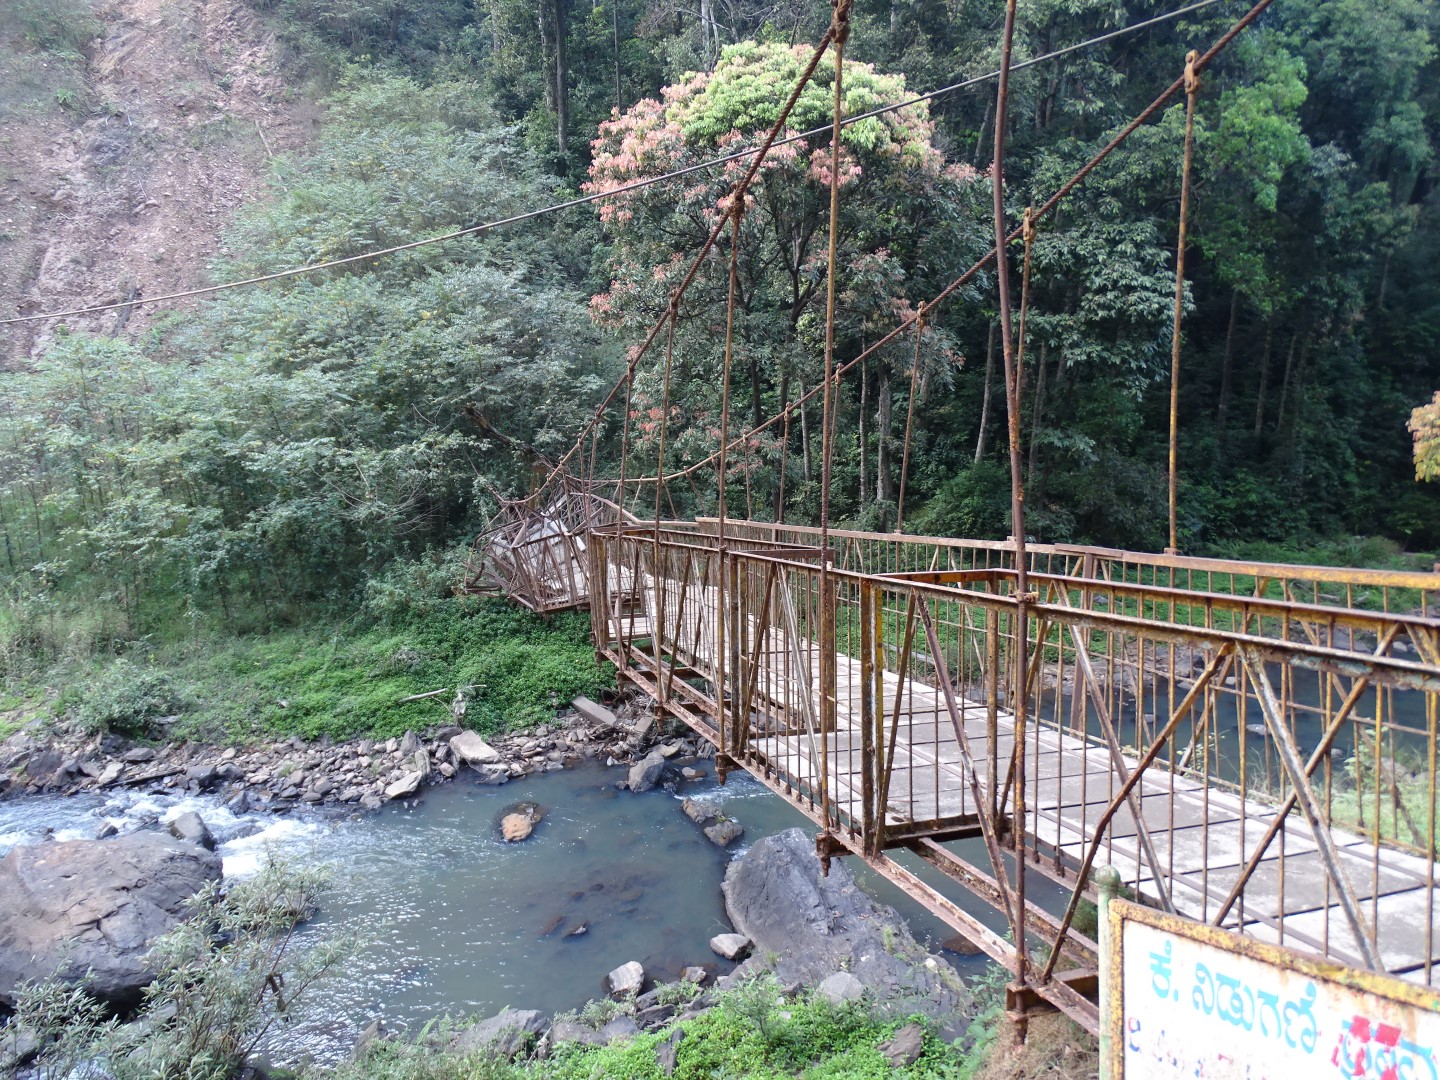 Hanging bridge at Abbi Falls